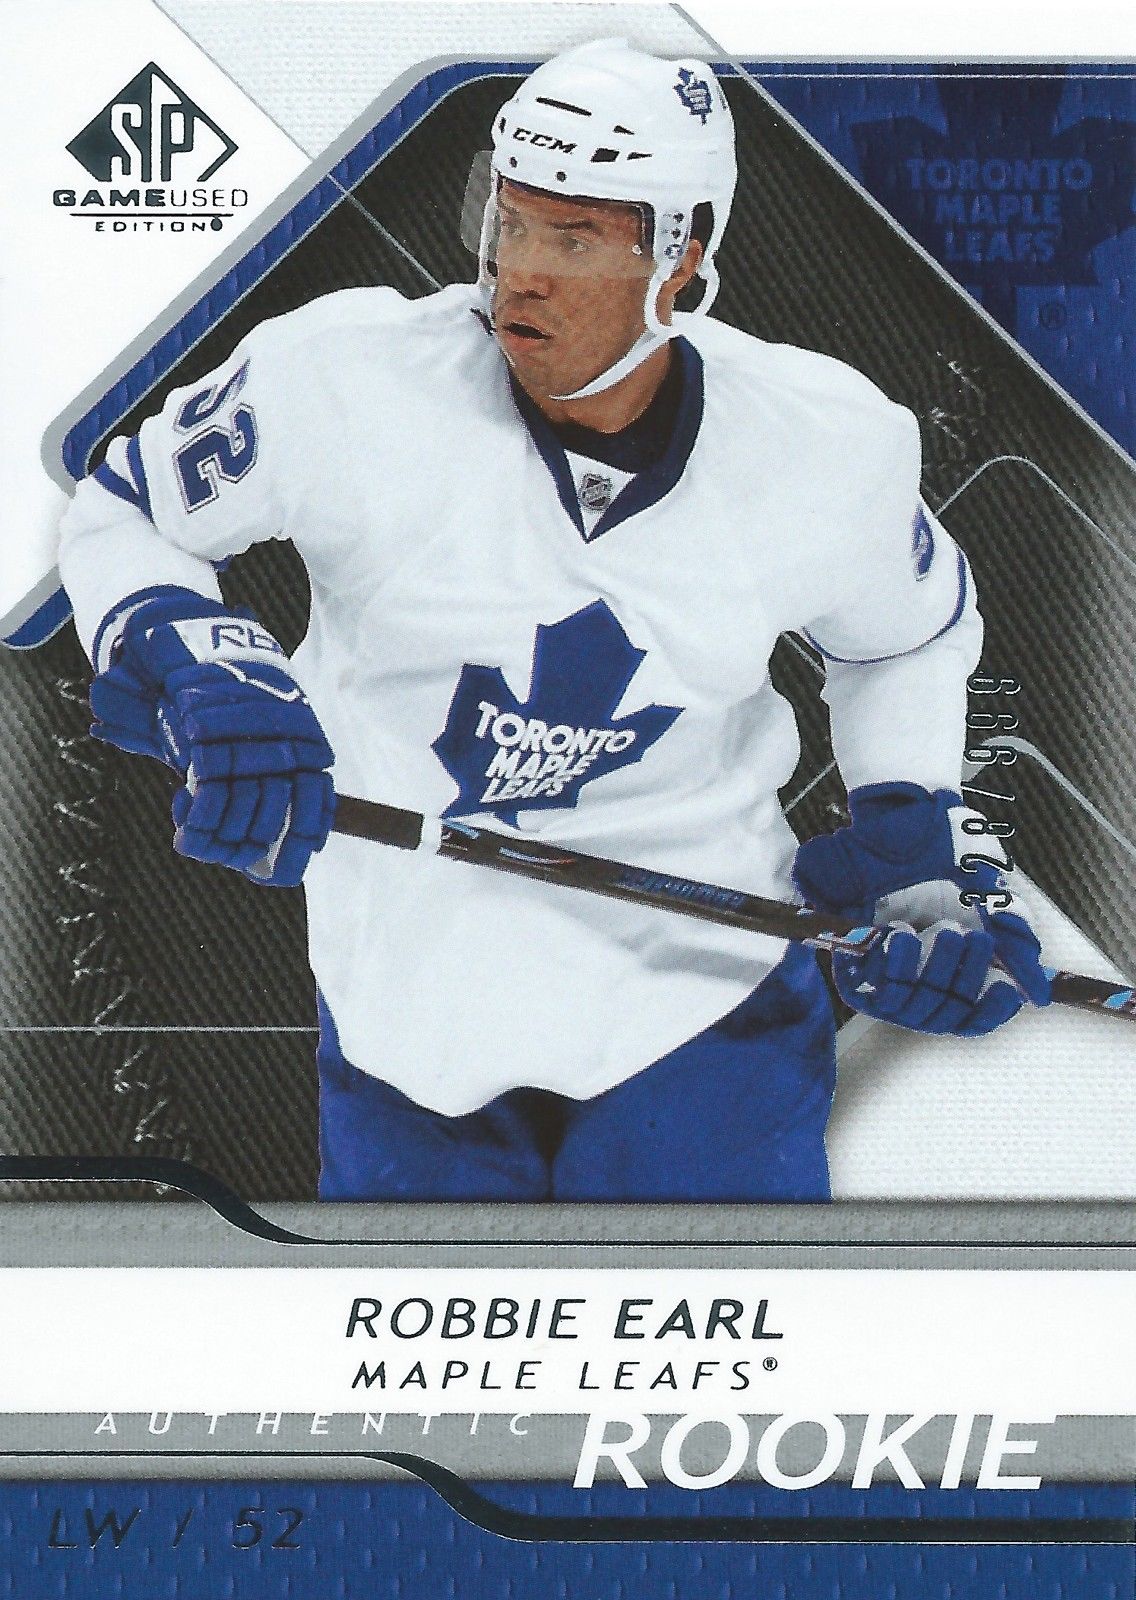  2008-09 SP Game Used ROBBIE EARL Rookie /999 Upper Deck RC NHL 01556 Image 1